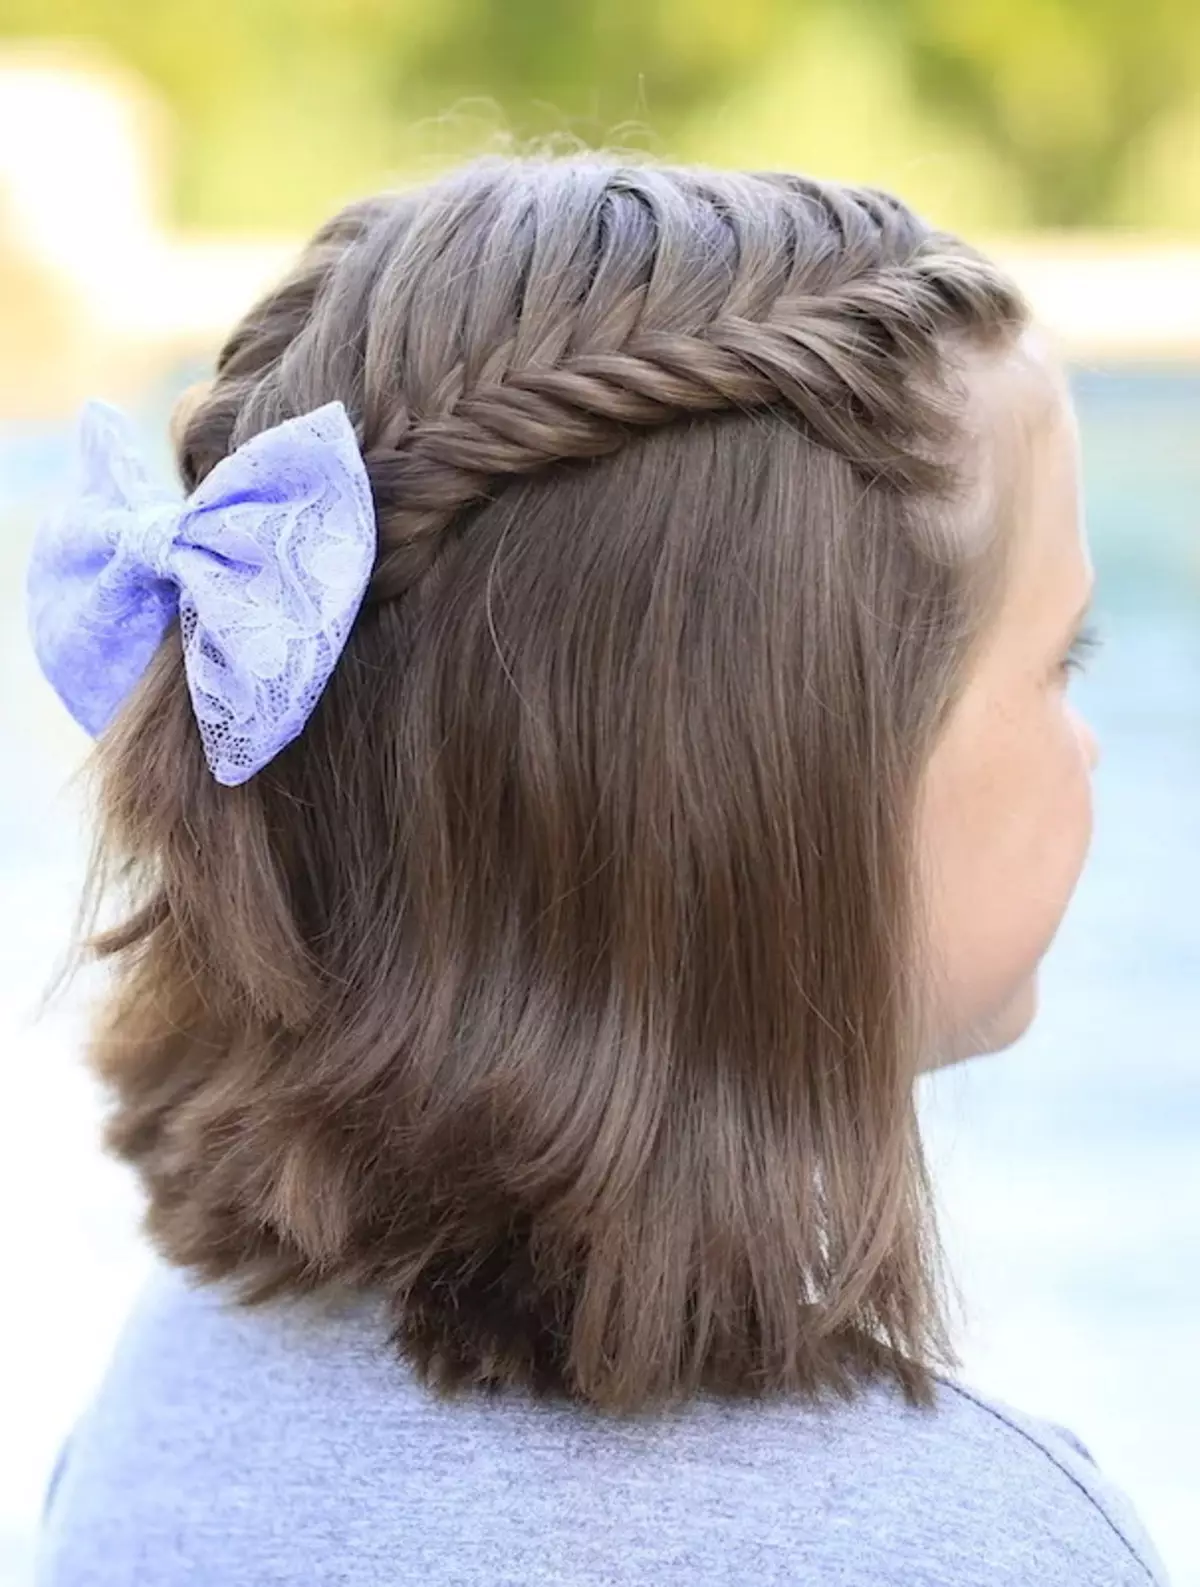 Прическа в школу 10 лет. Прически для девочек. Красивые причёски для девочек. Причёски для девочек в школу. Красивые причёски для девочек на короткие волосы.